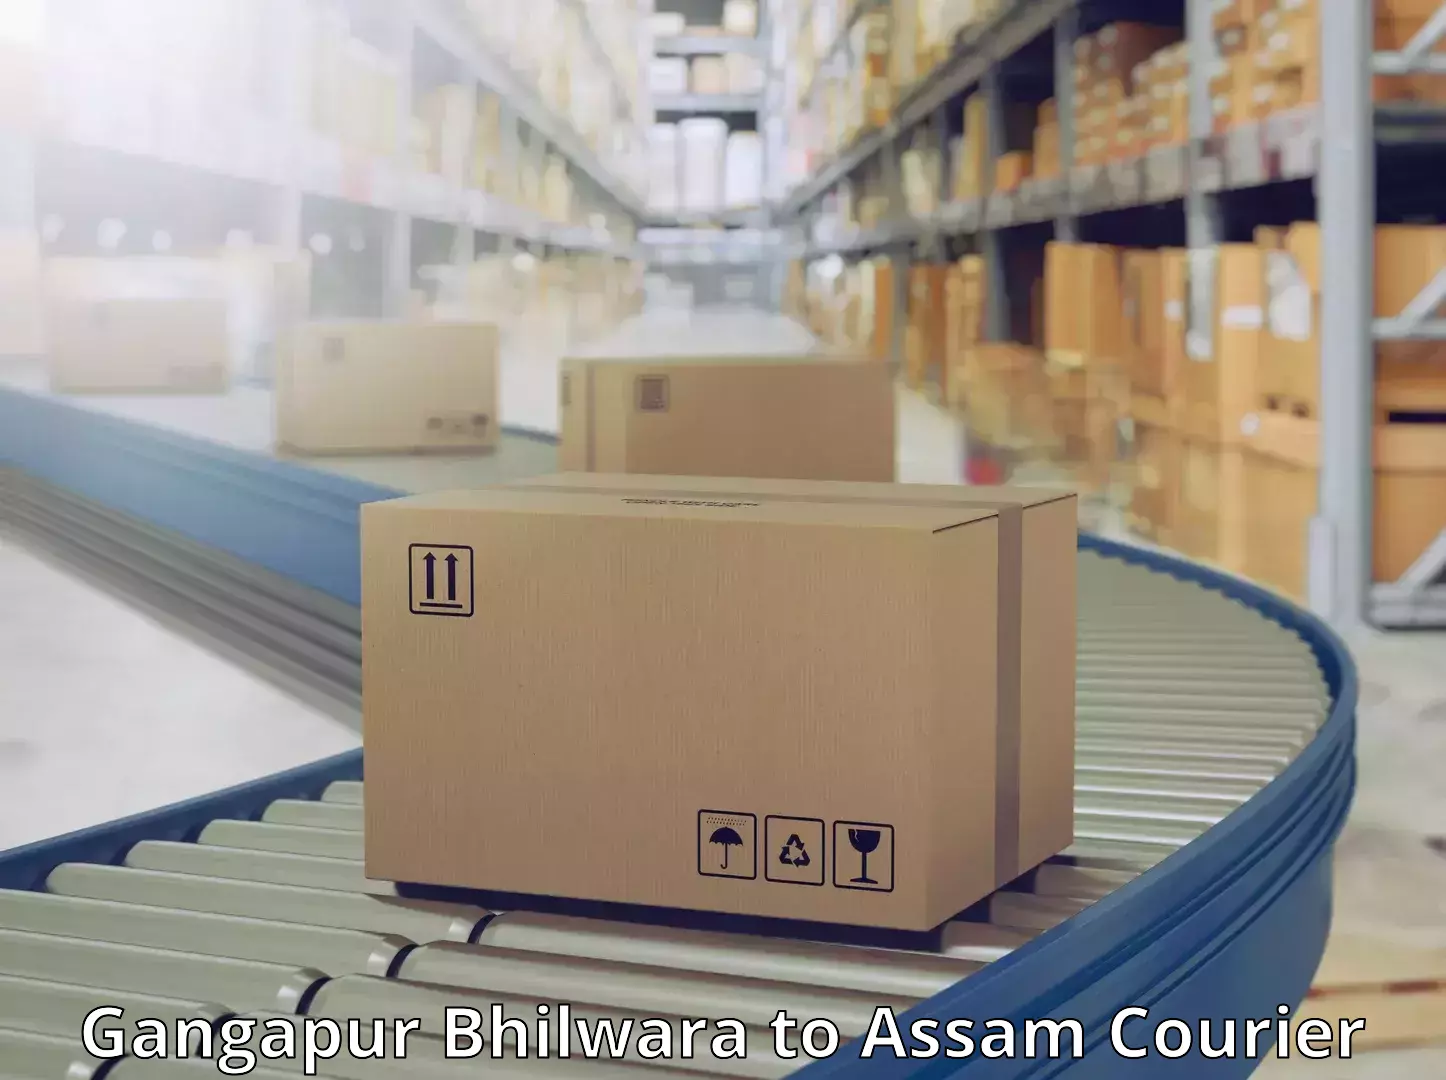 Quality courier partnerships Gangapur Bhilwara to Assam